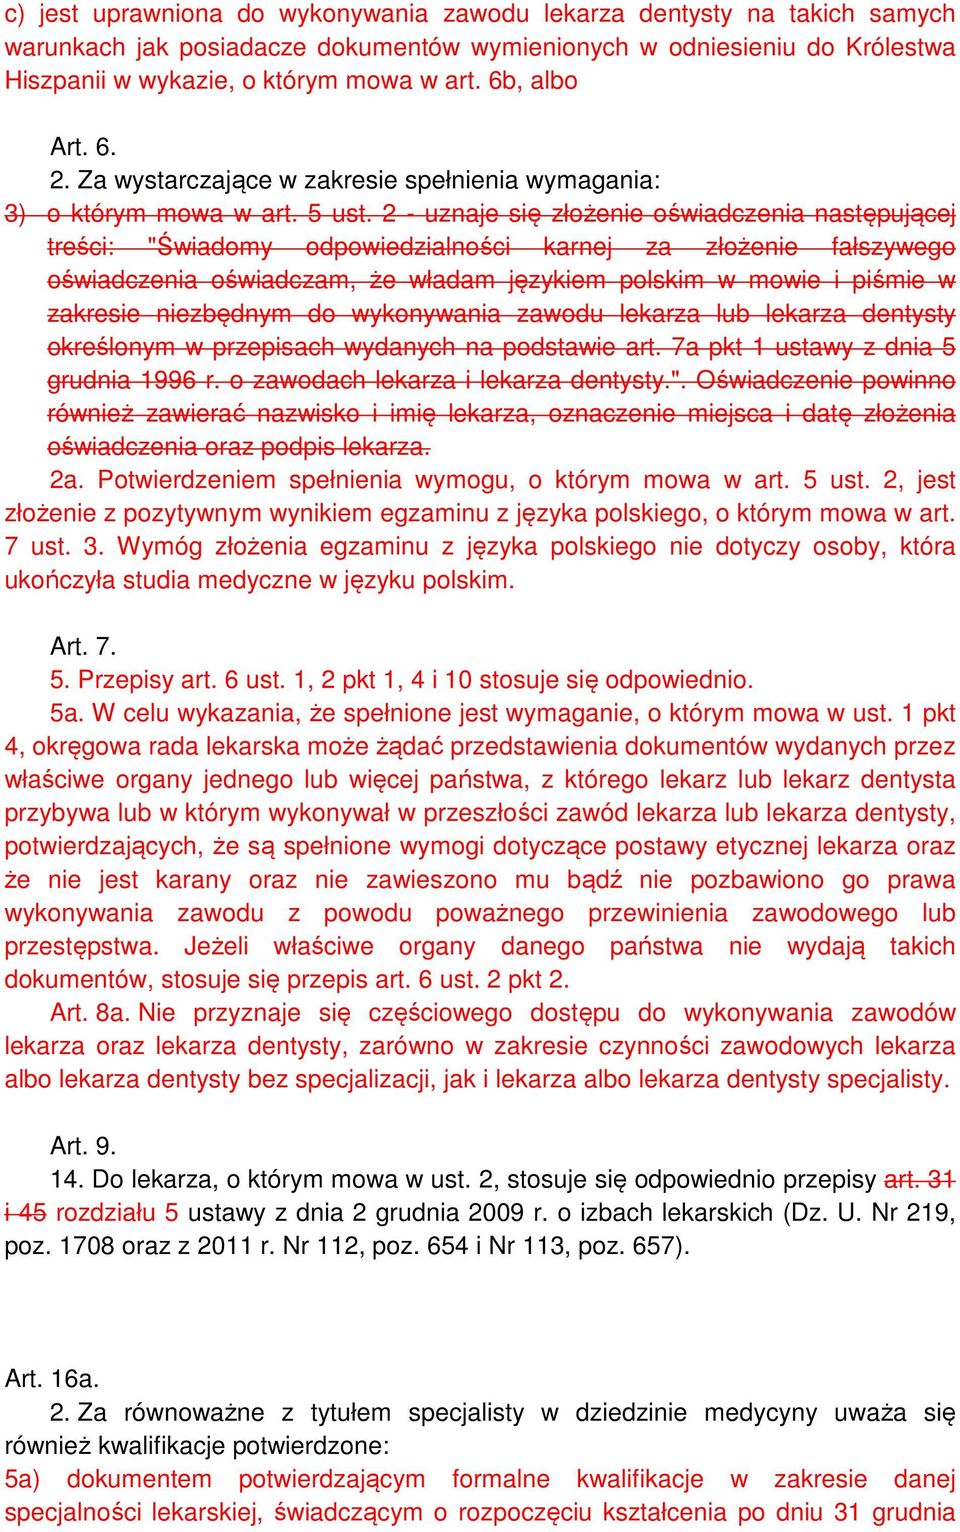 2 - uznaje się złożenie oświadczenia następującej treści: "Świadomy odpowiedzialności karnej za złożenie fałszywego oświadczenia oświadczam, że władam językiem polskim w mowie i piśmie w zakresie